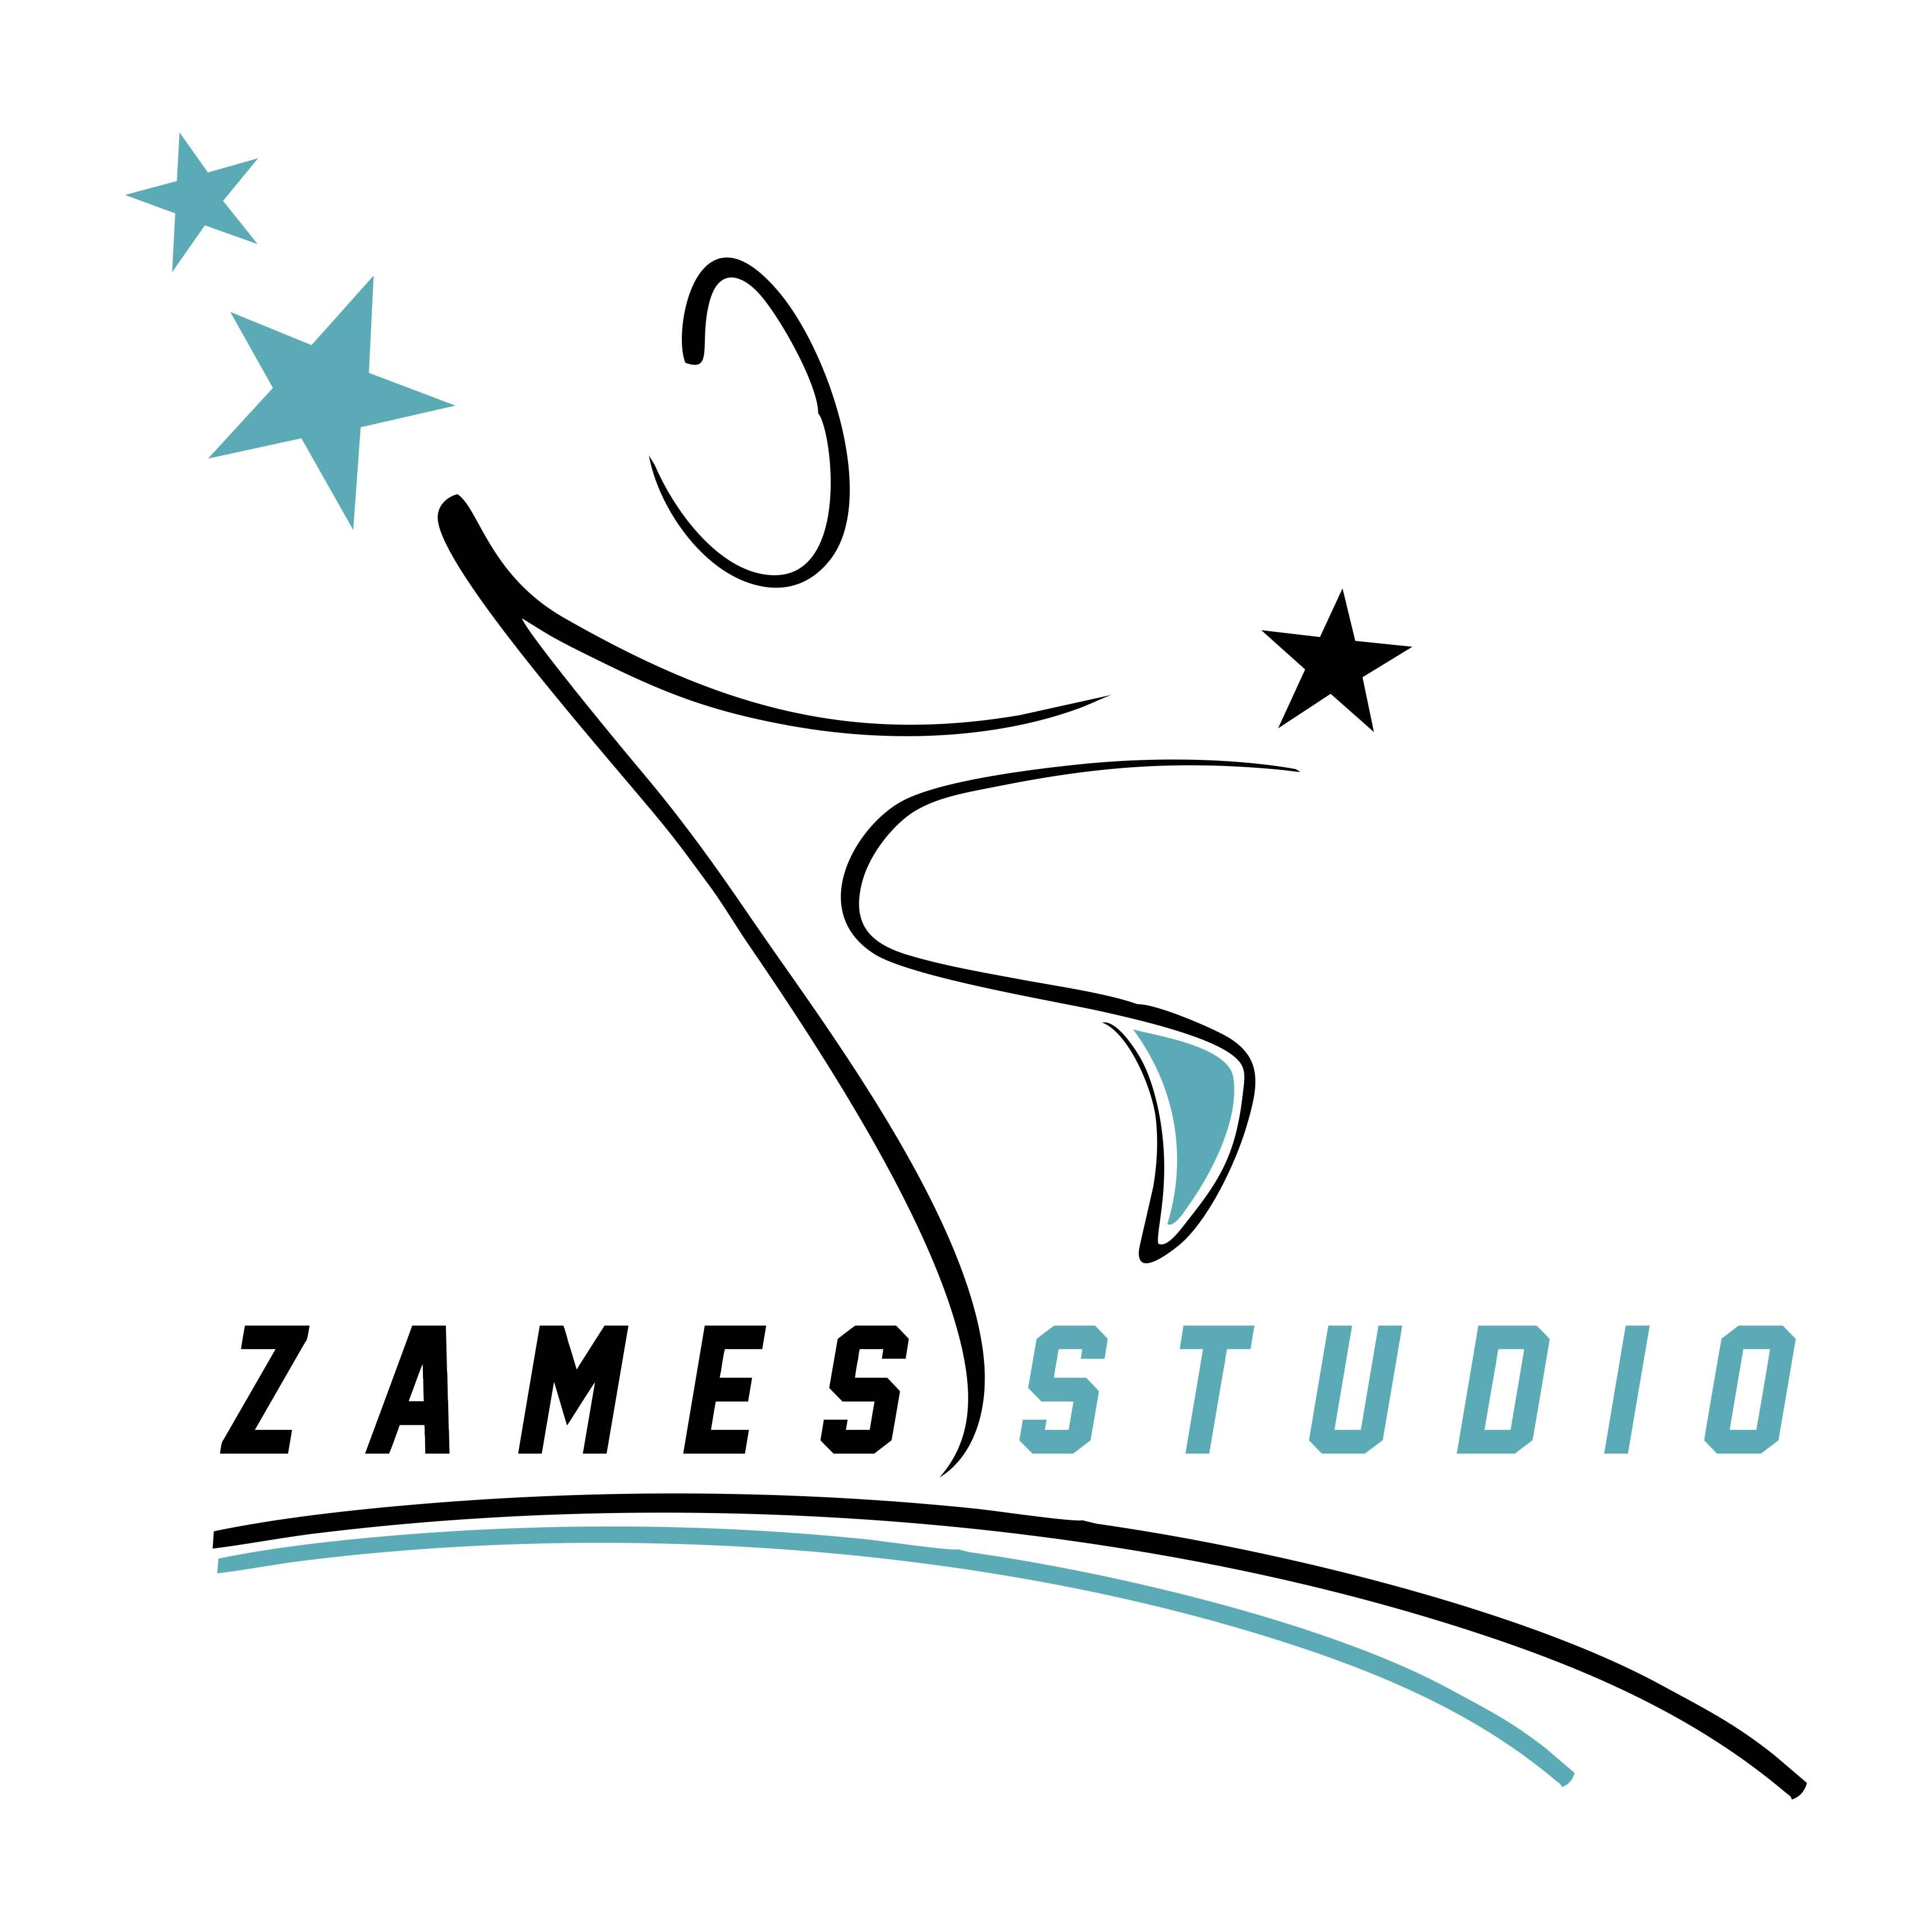 Курс для похудения "Body Make"от студии танца и фитнеса "Zames Studio" за 3,13 руб./занятие